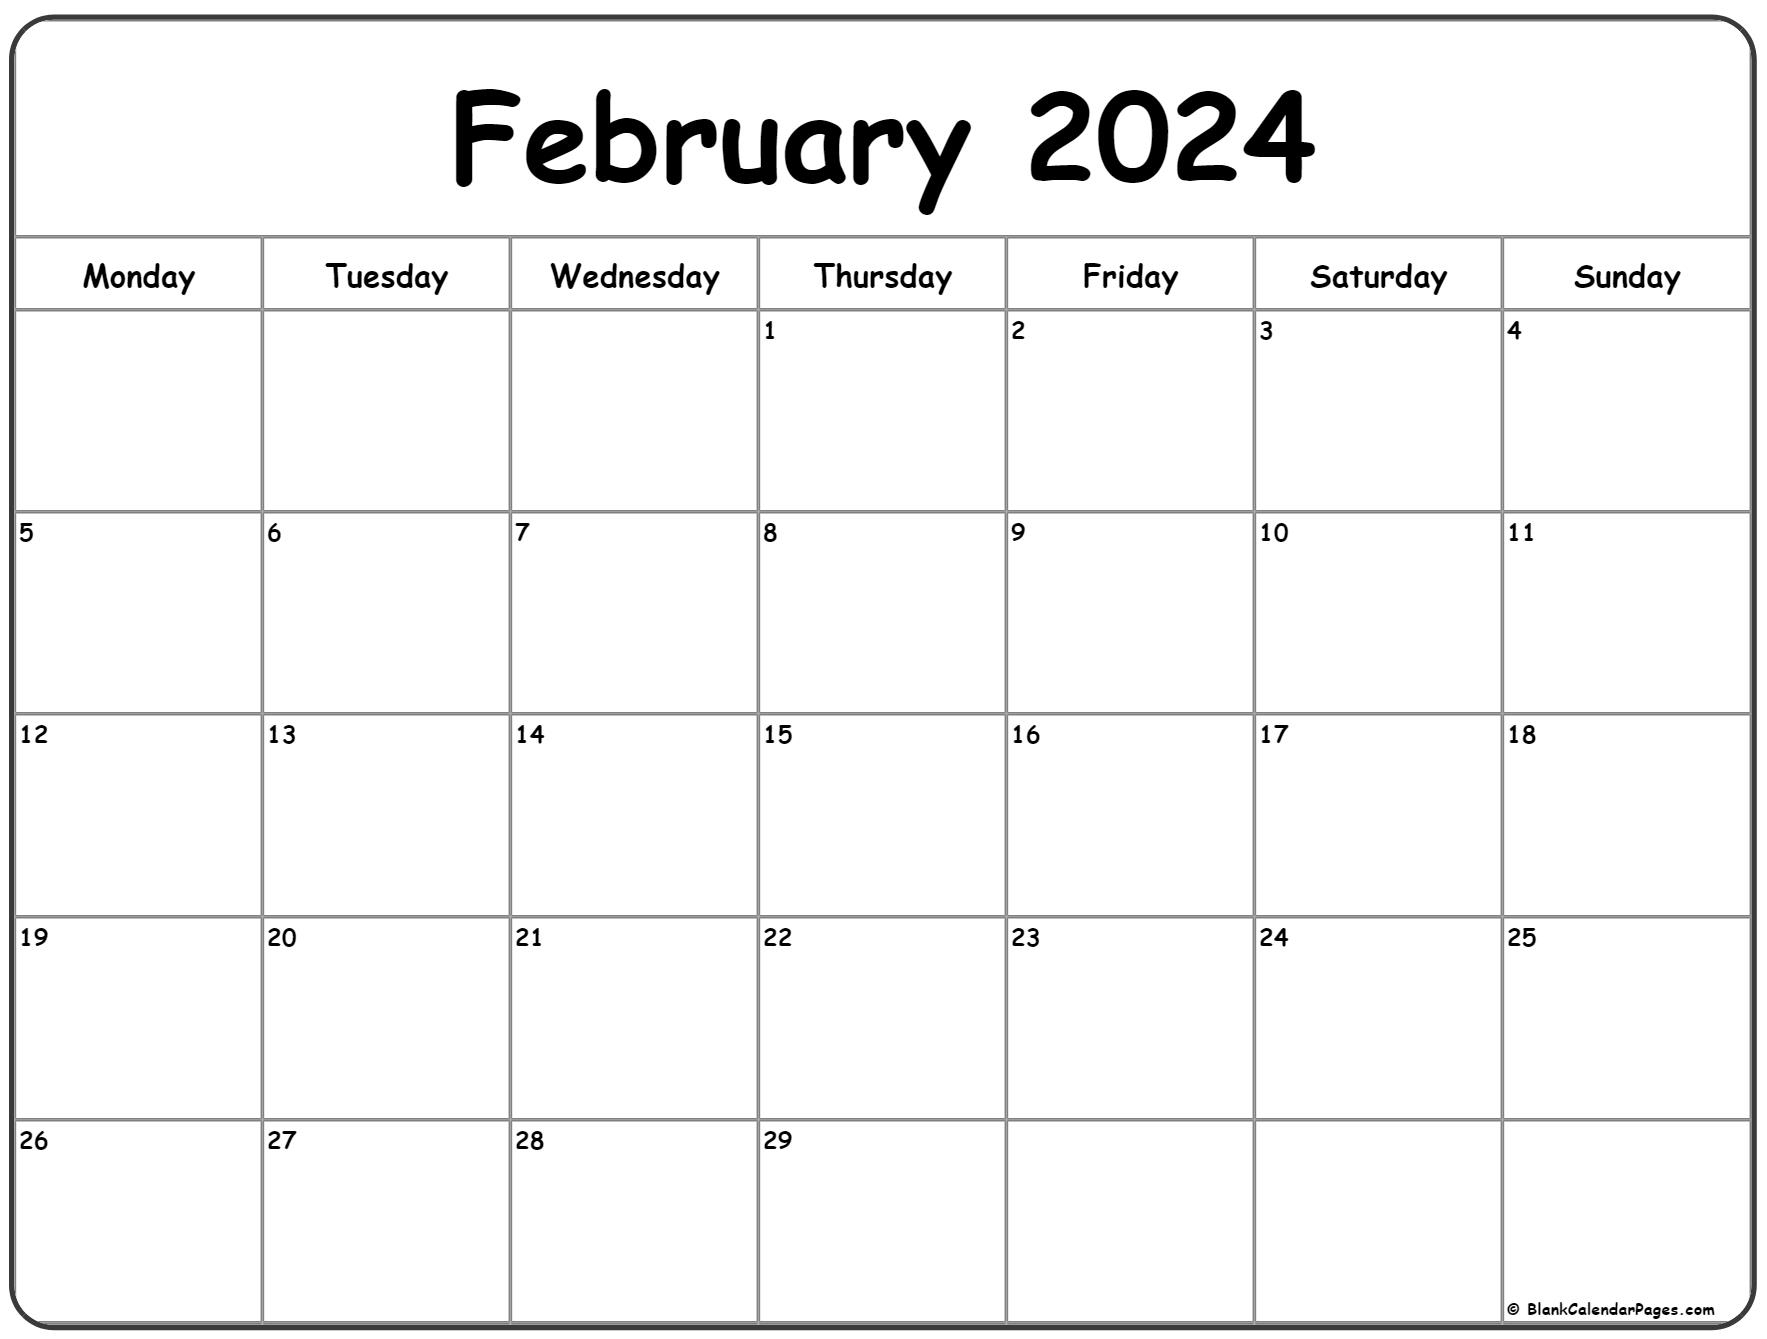 February 2024 Monday Calendar | Monday To Sunday for Printable Calendar February 2024